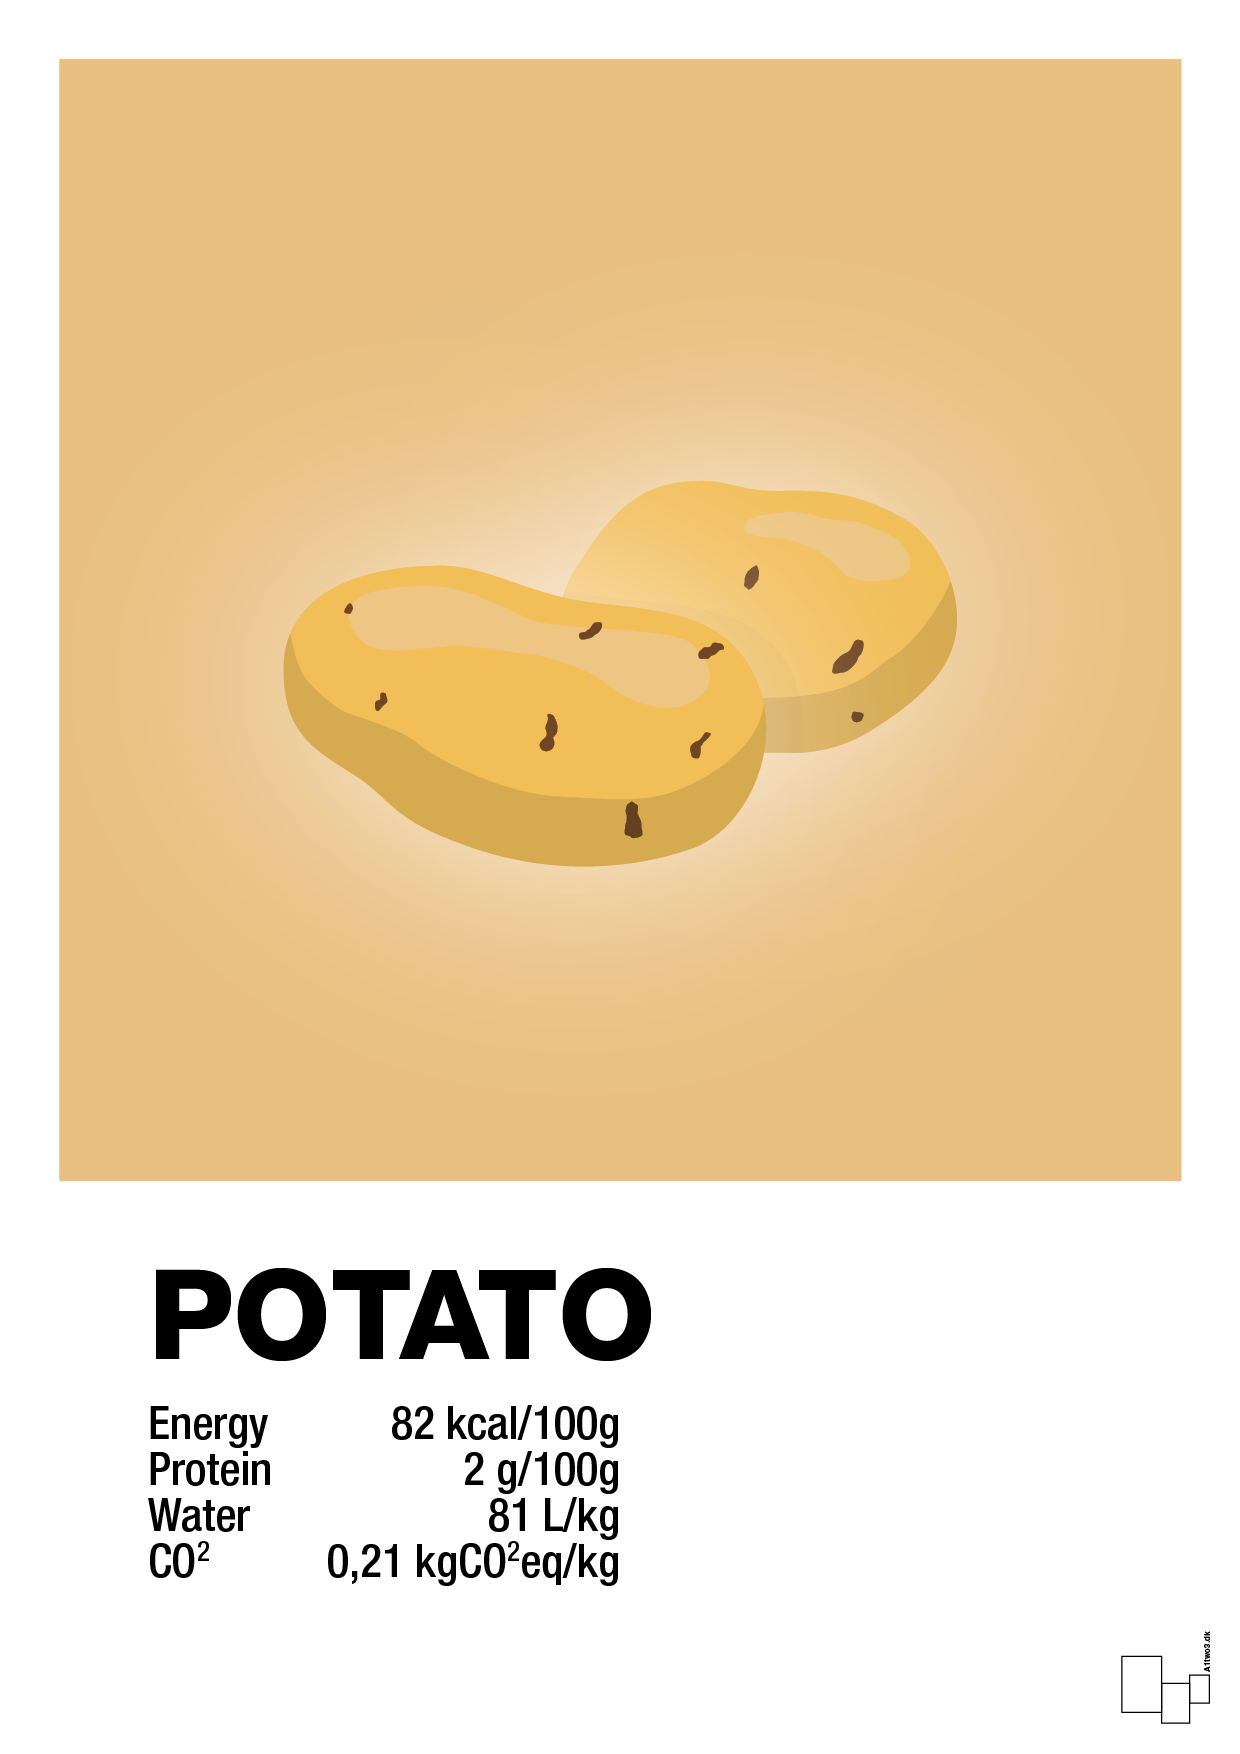 potato nutrition og miljø - Plakat med Mad & Drikke i Charismatic